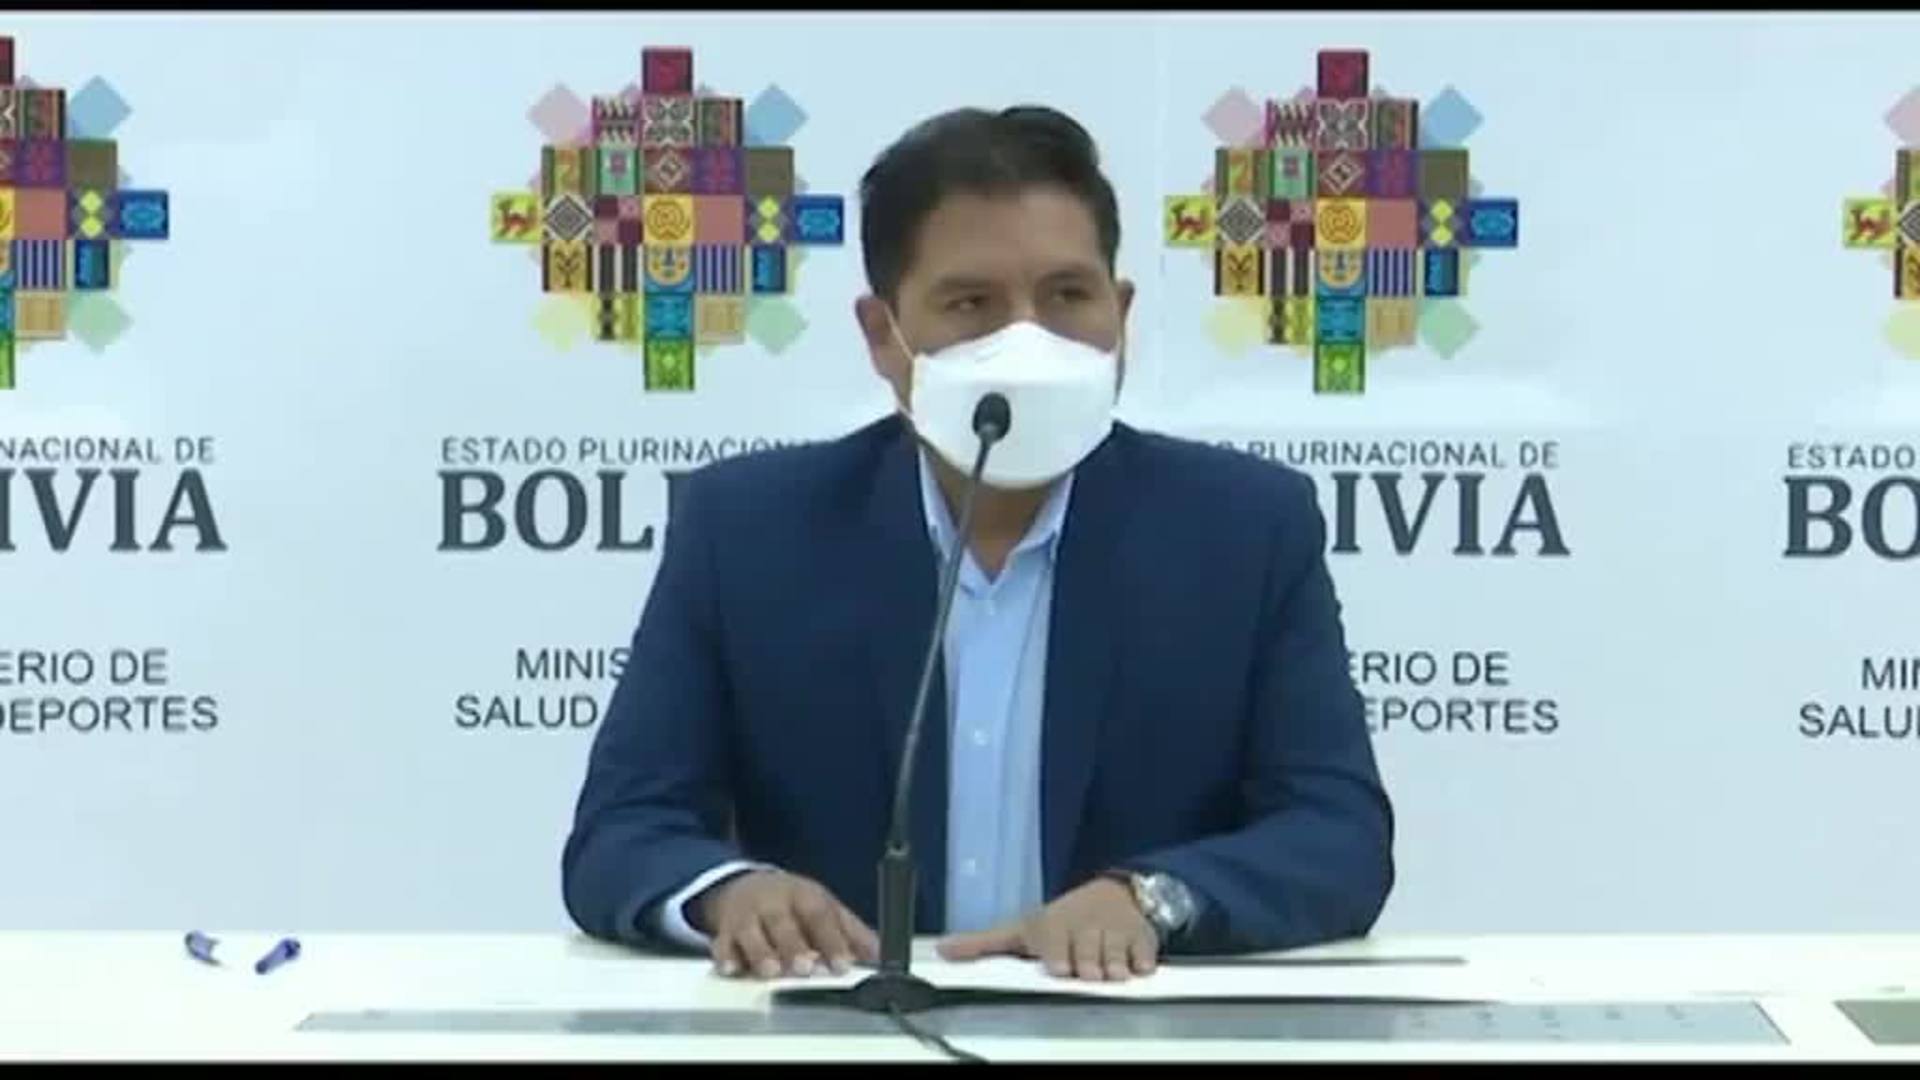 El Gobierno de Bolivia retira el uso de pasaporte covid para entrar en lugares públicos "mientras dure la emergencia sanitaria"